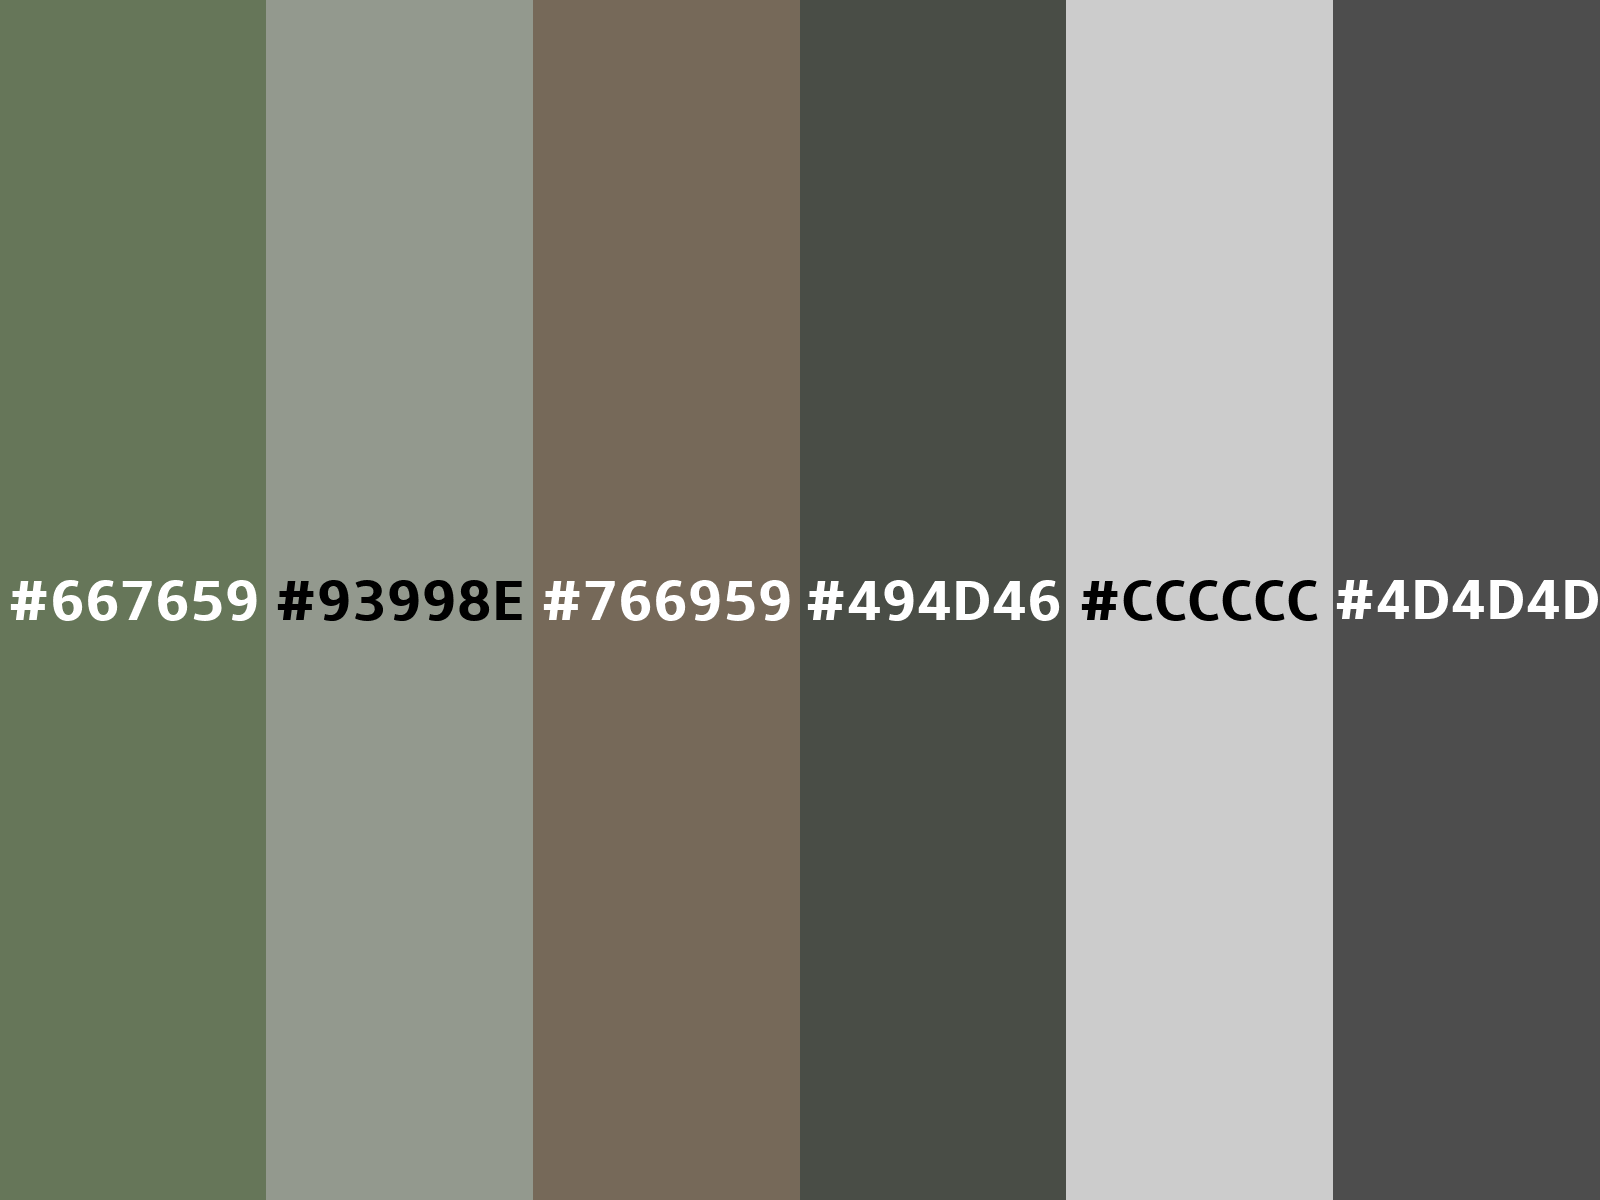 Metallic Brass color hex code is #C49E5B